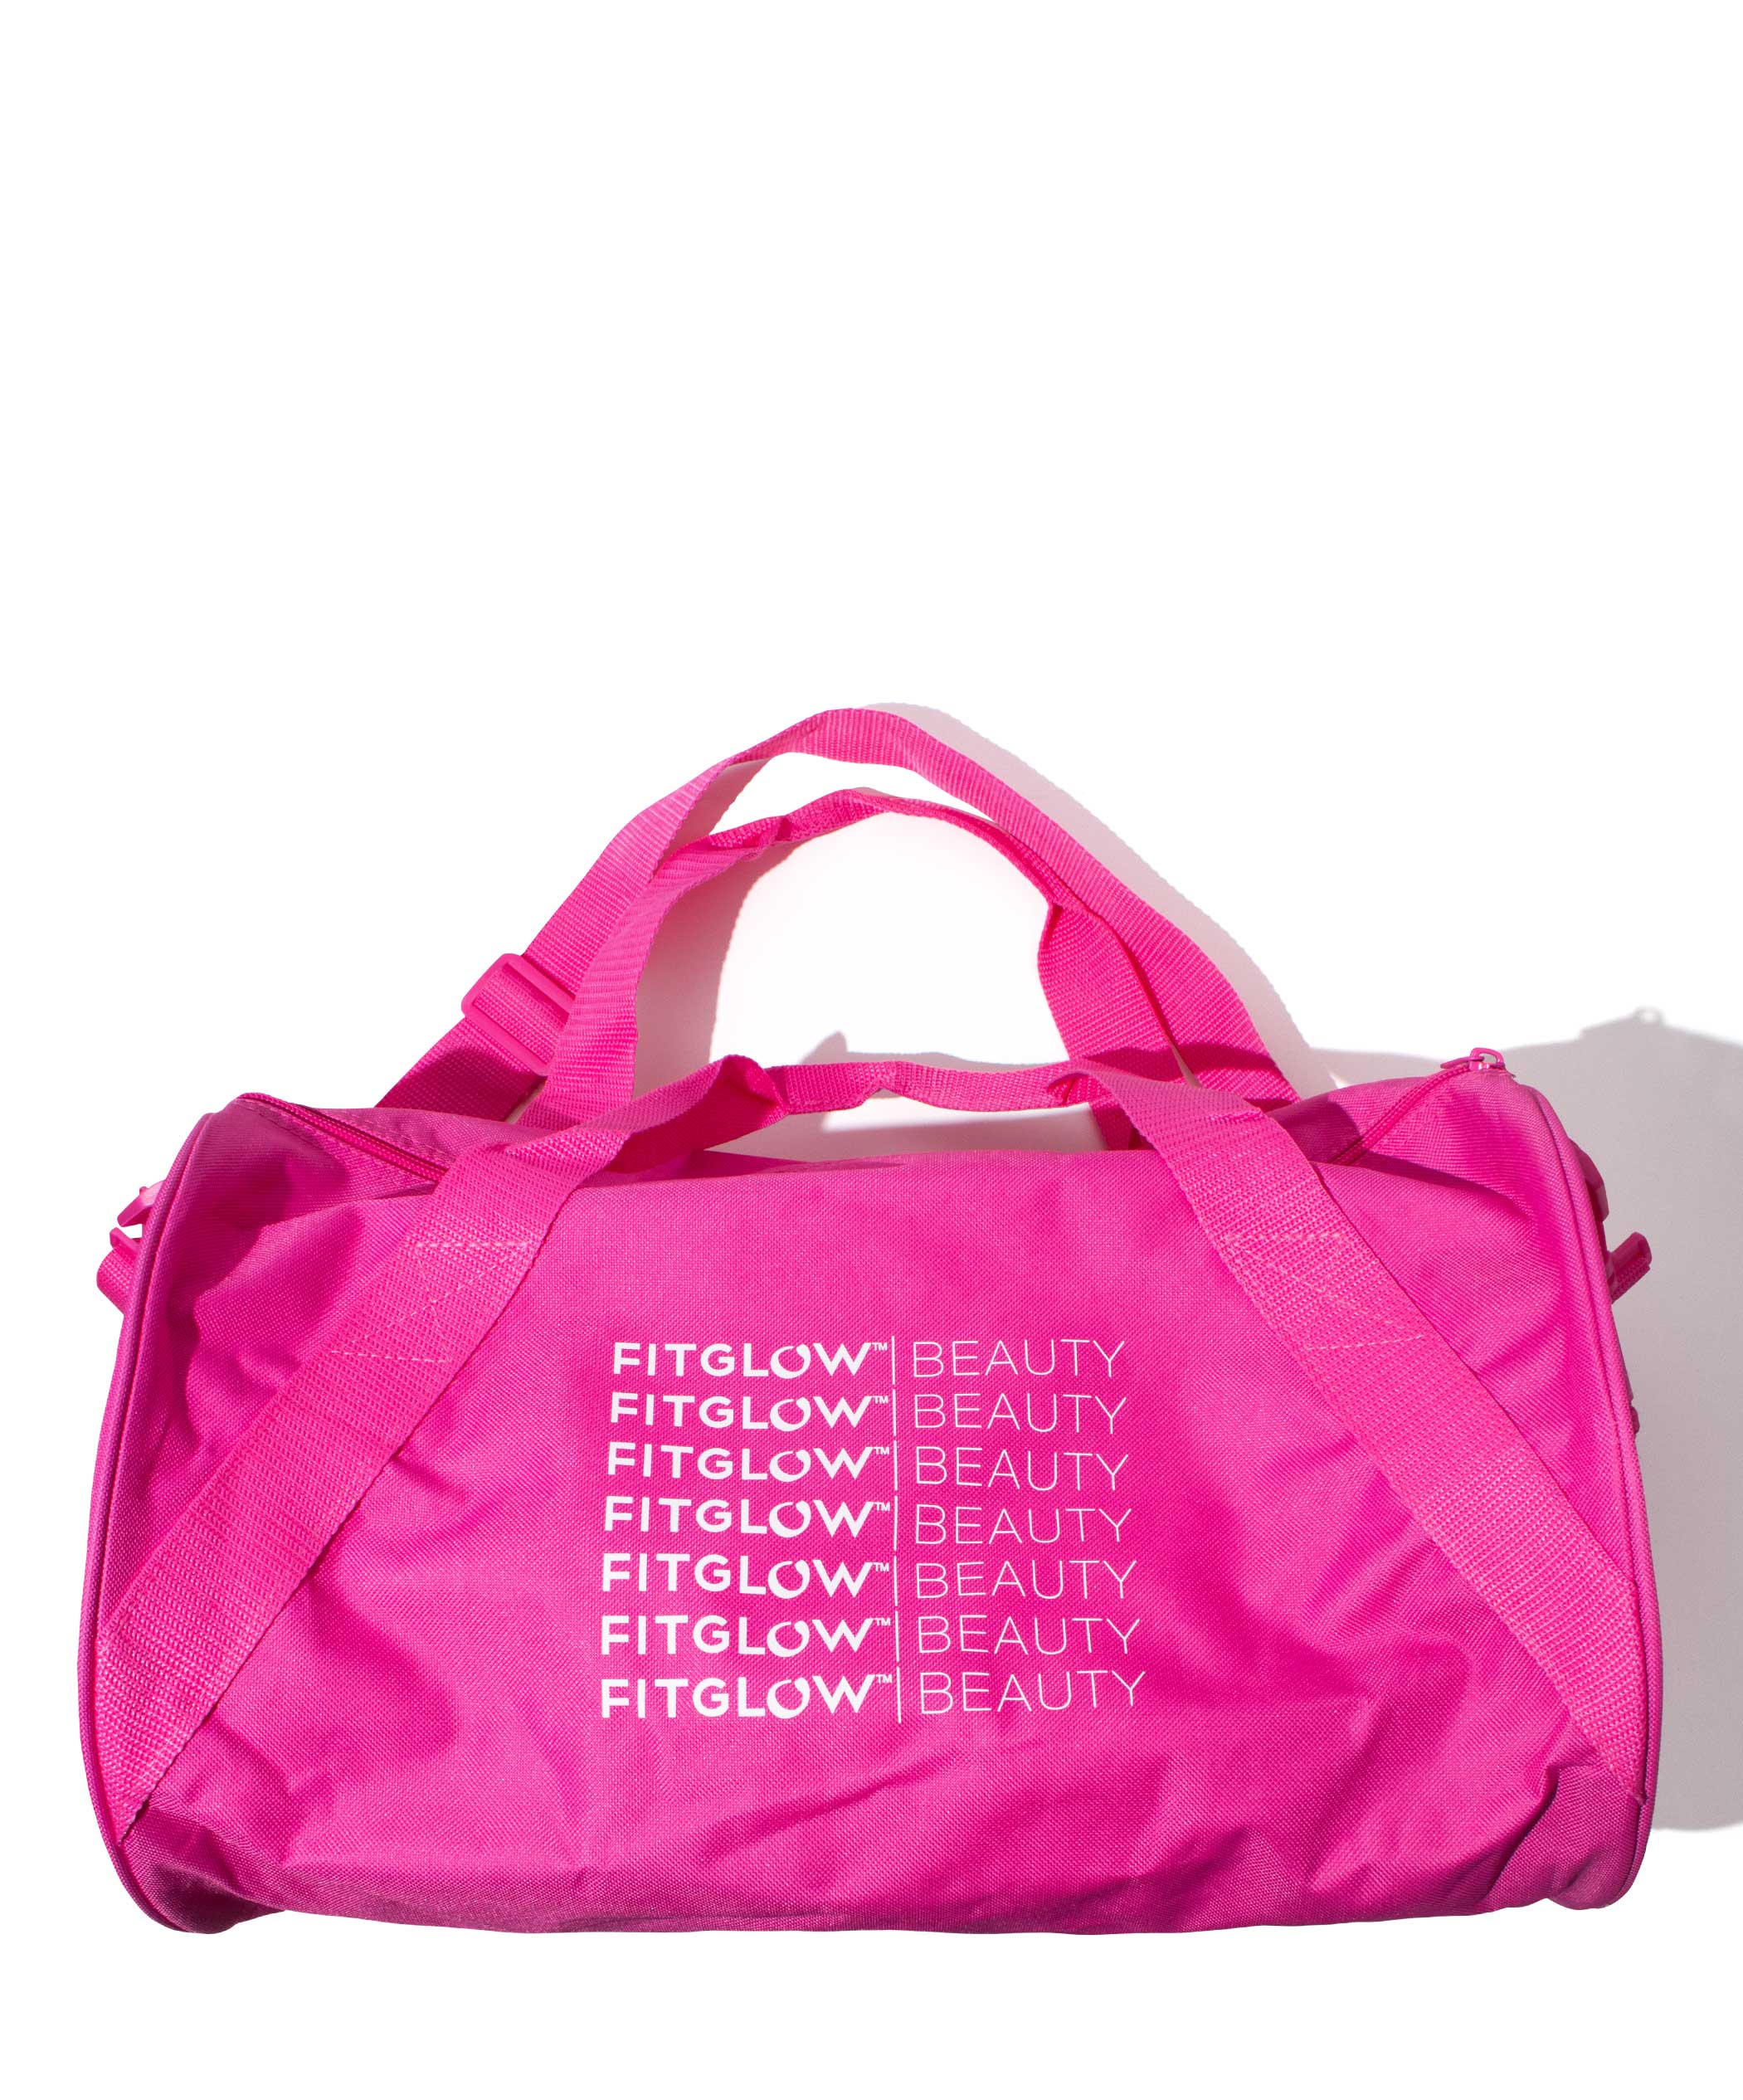 Fitglow Duffle Bag